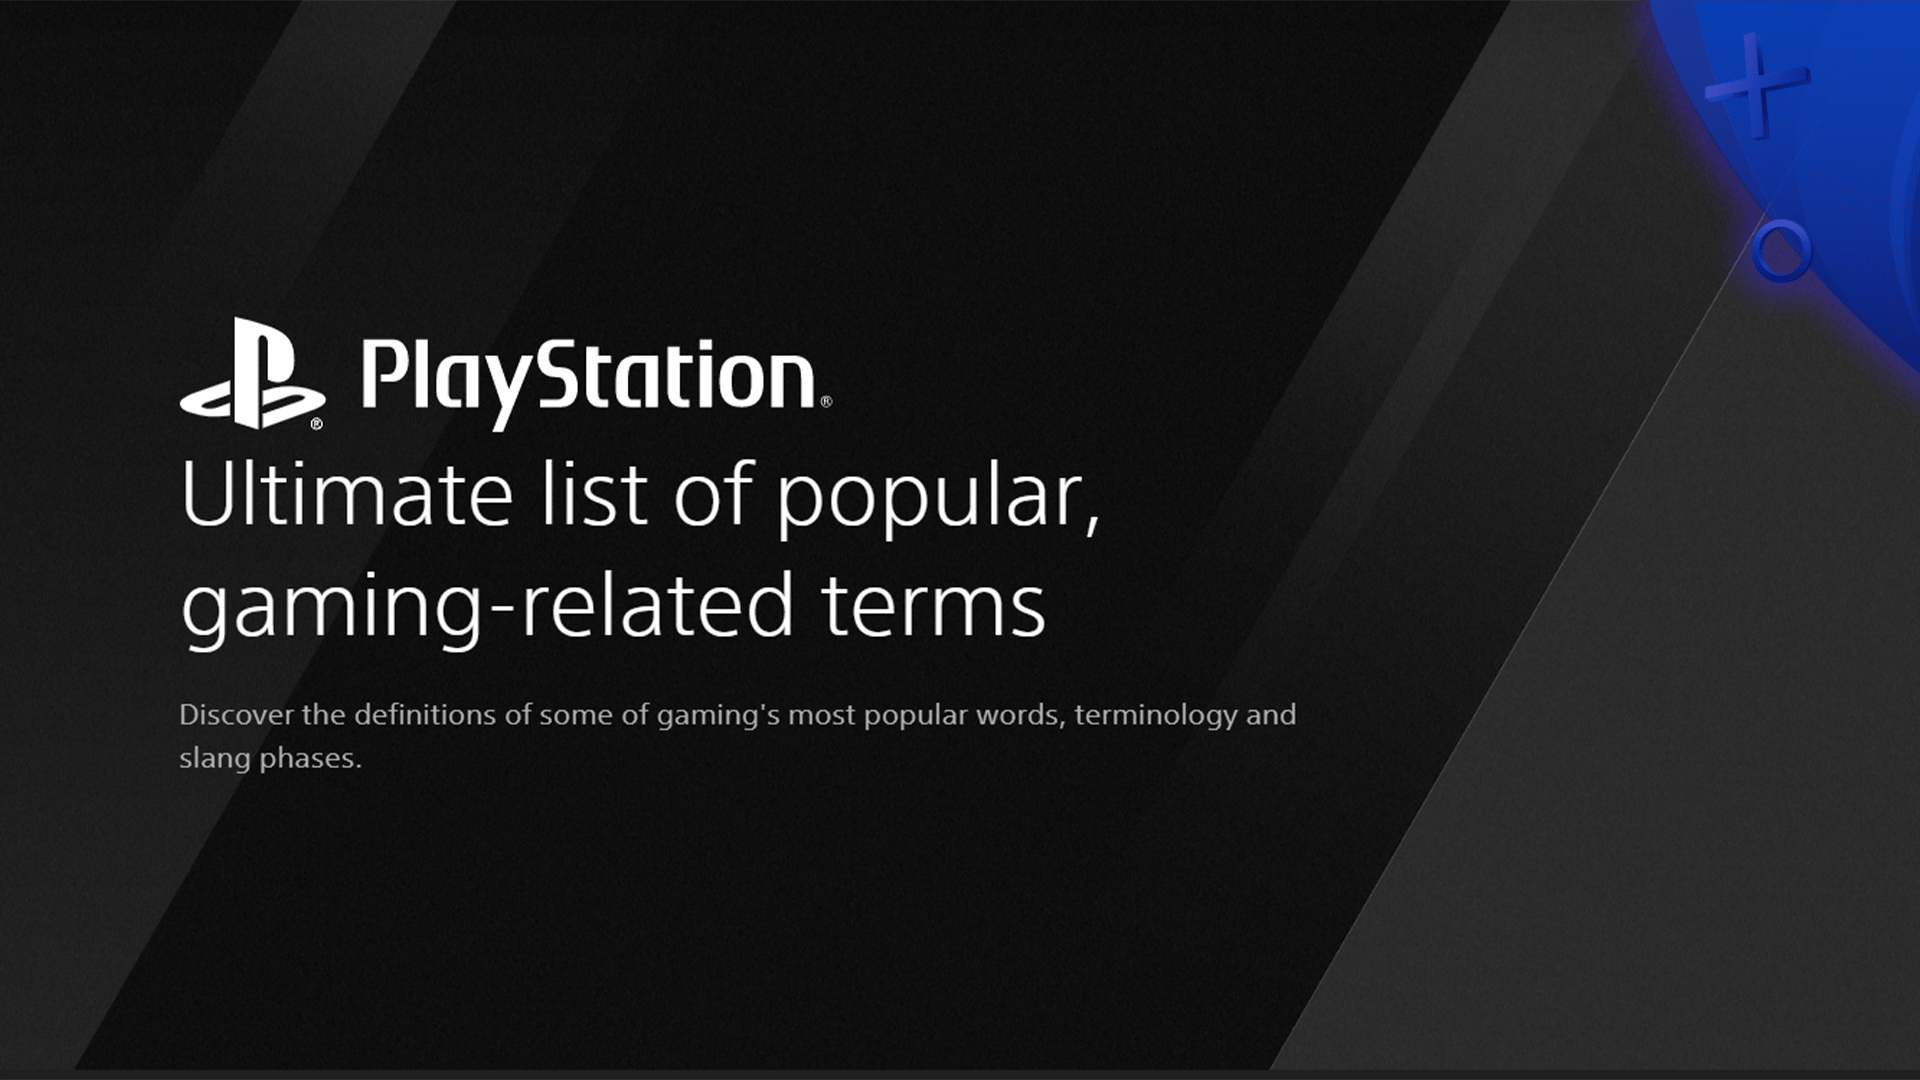 PlayStation publie un dictionnaire du jeu vidéo